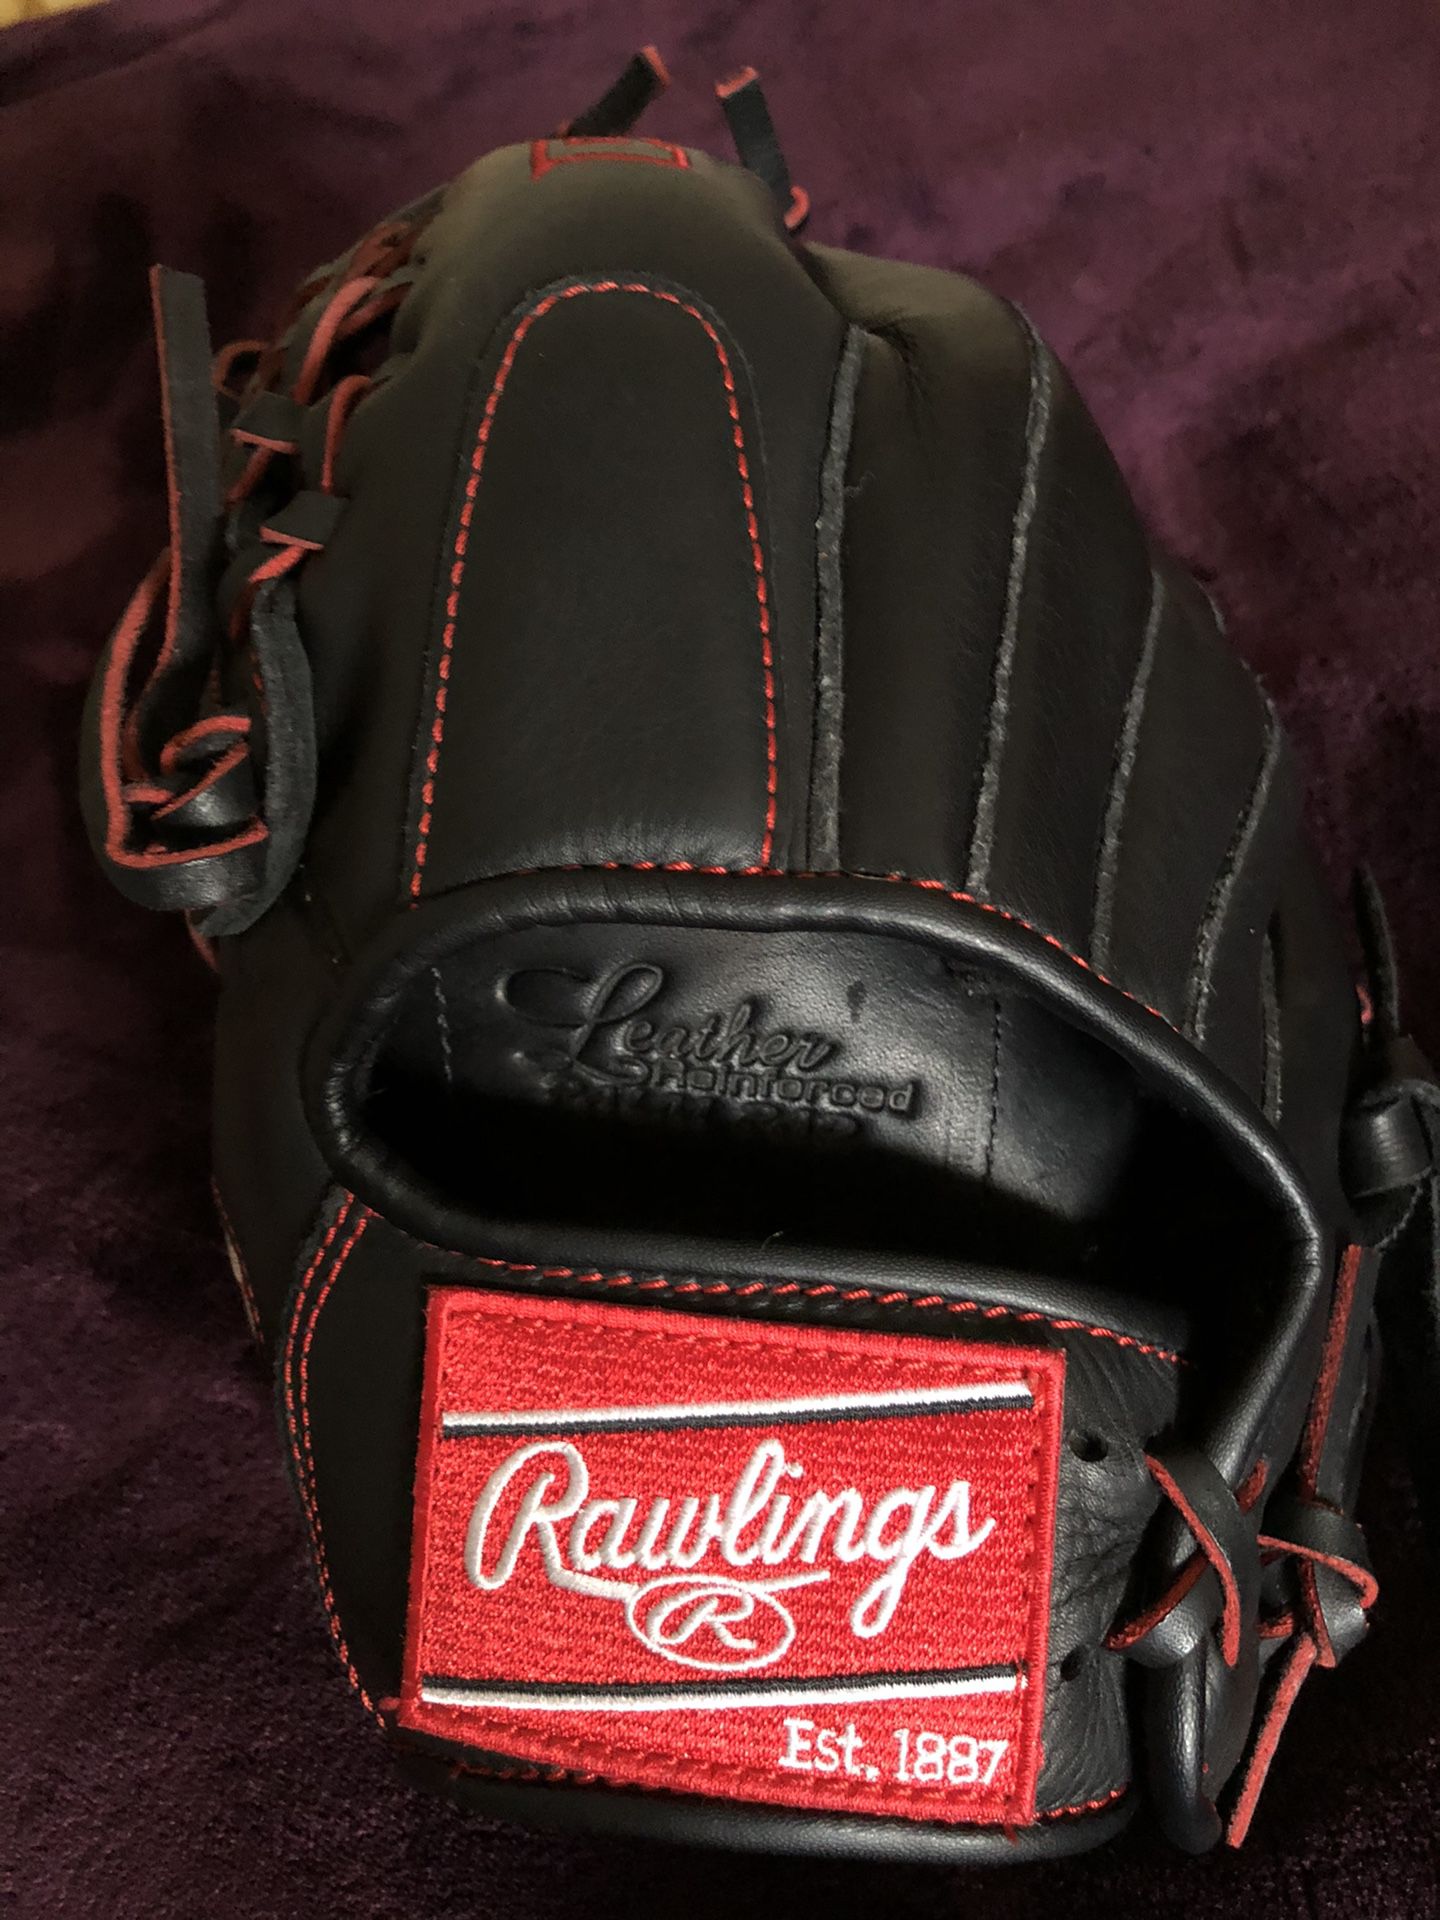 New R9 Rawlings baseball glove 11.5